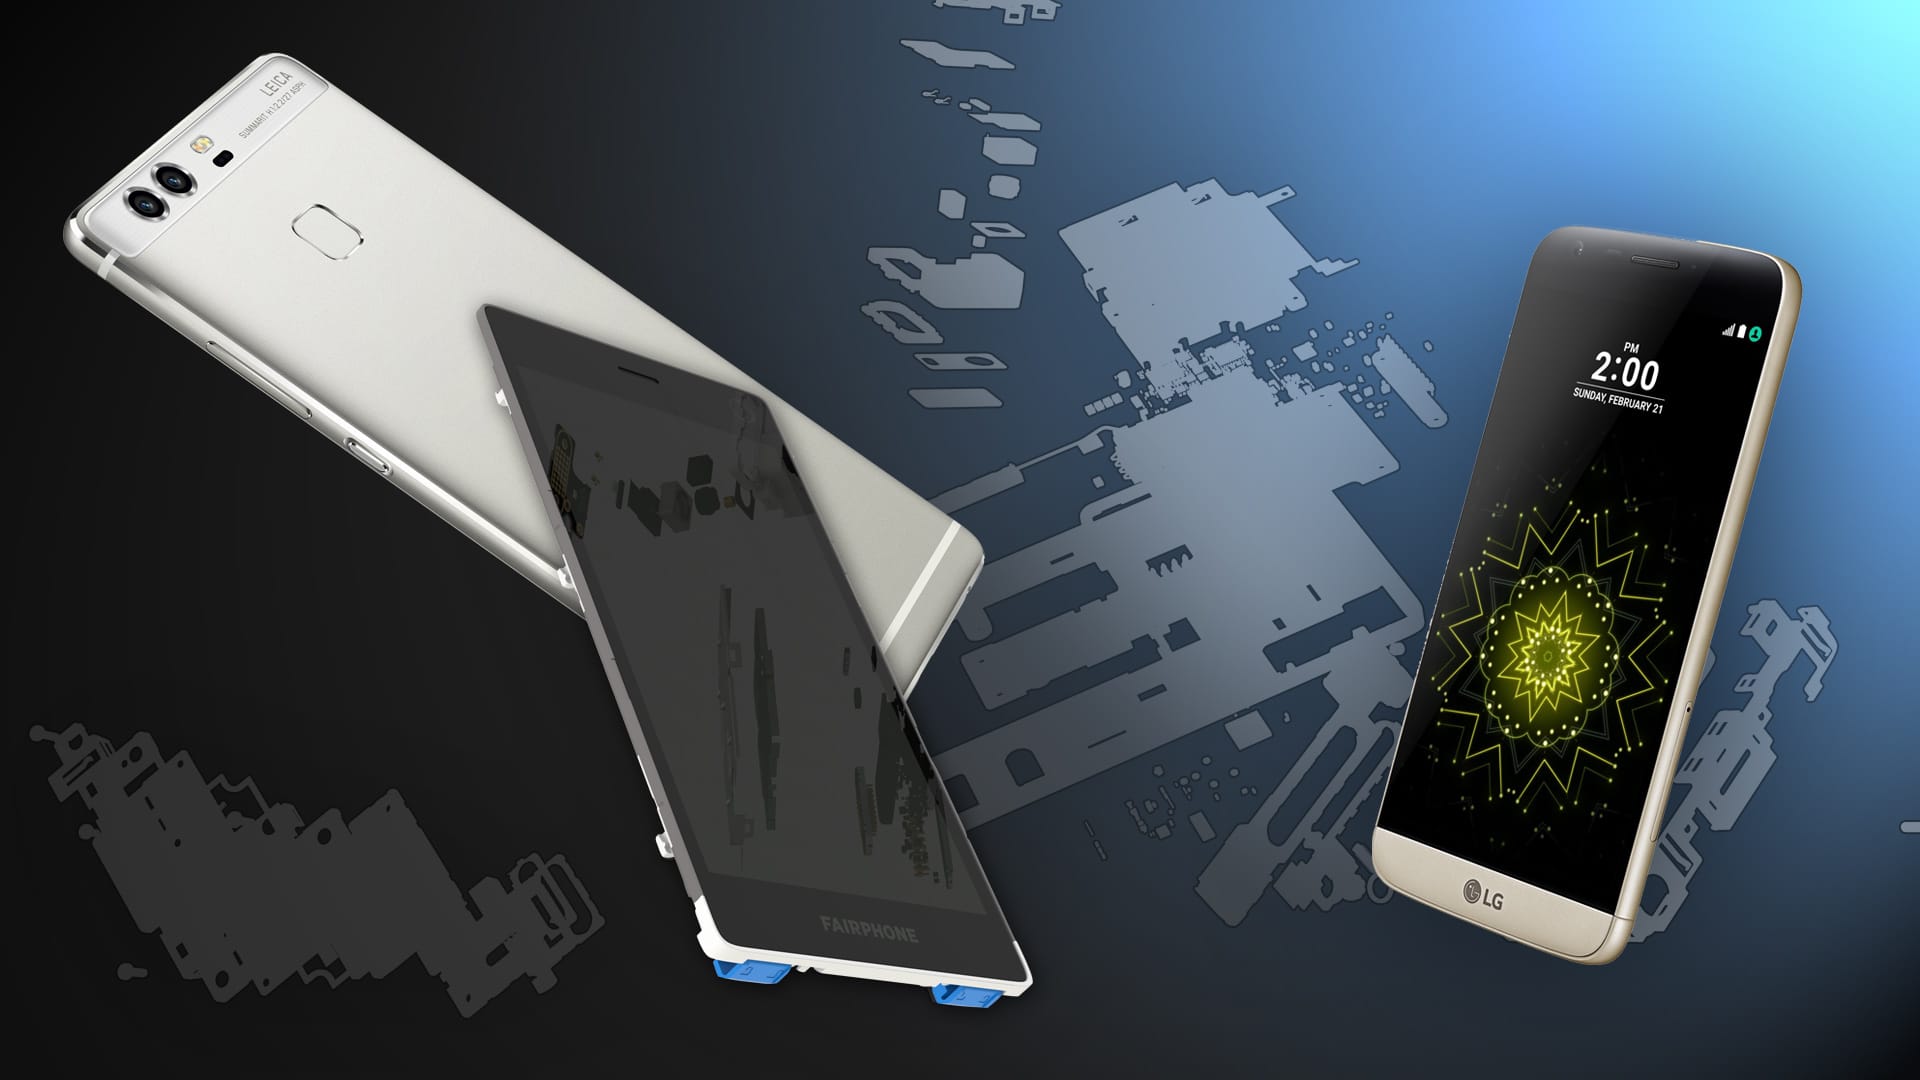 Die Stiftung Warentest hat mit dem Fairphone 2, dem Huawei P9 und dem LG G5 drei außergewöhnliche Smartphones getestet.